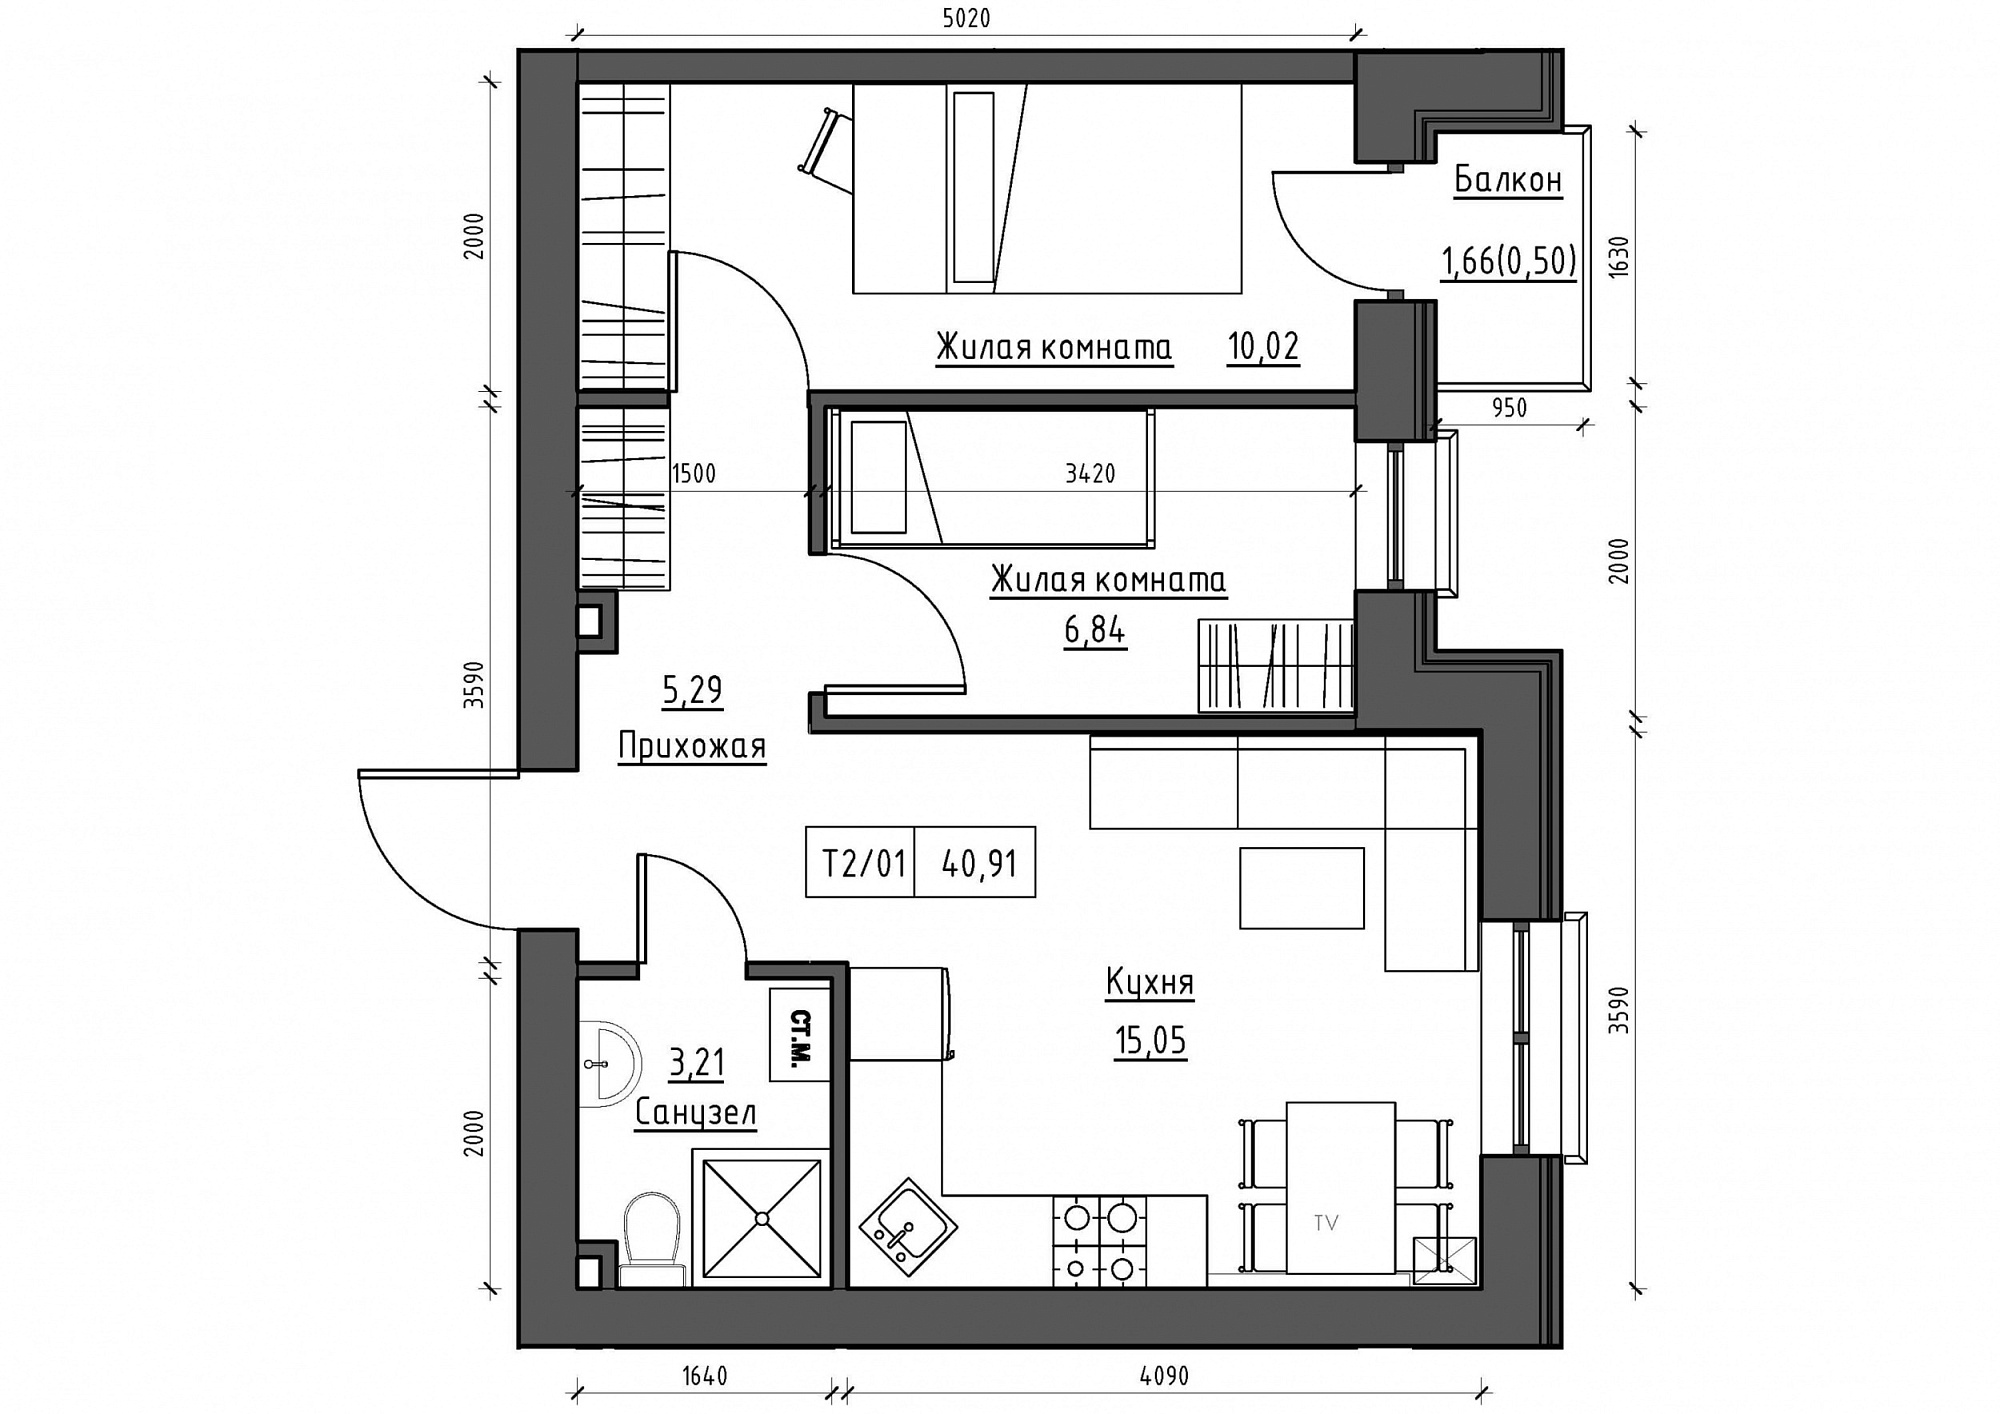 Планування 2-к квартира площею 40.91м2, KS-011-04/0006.